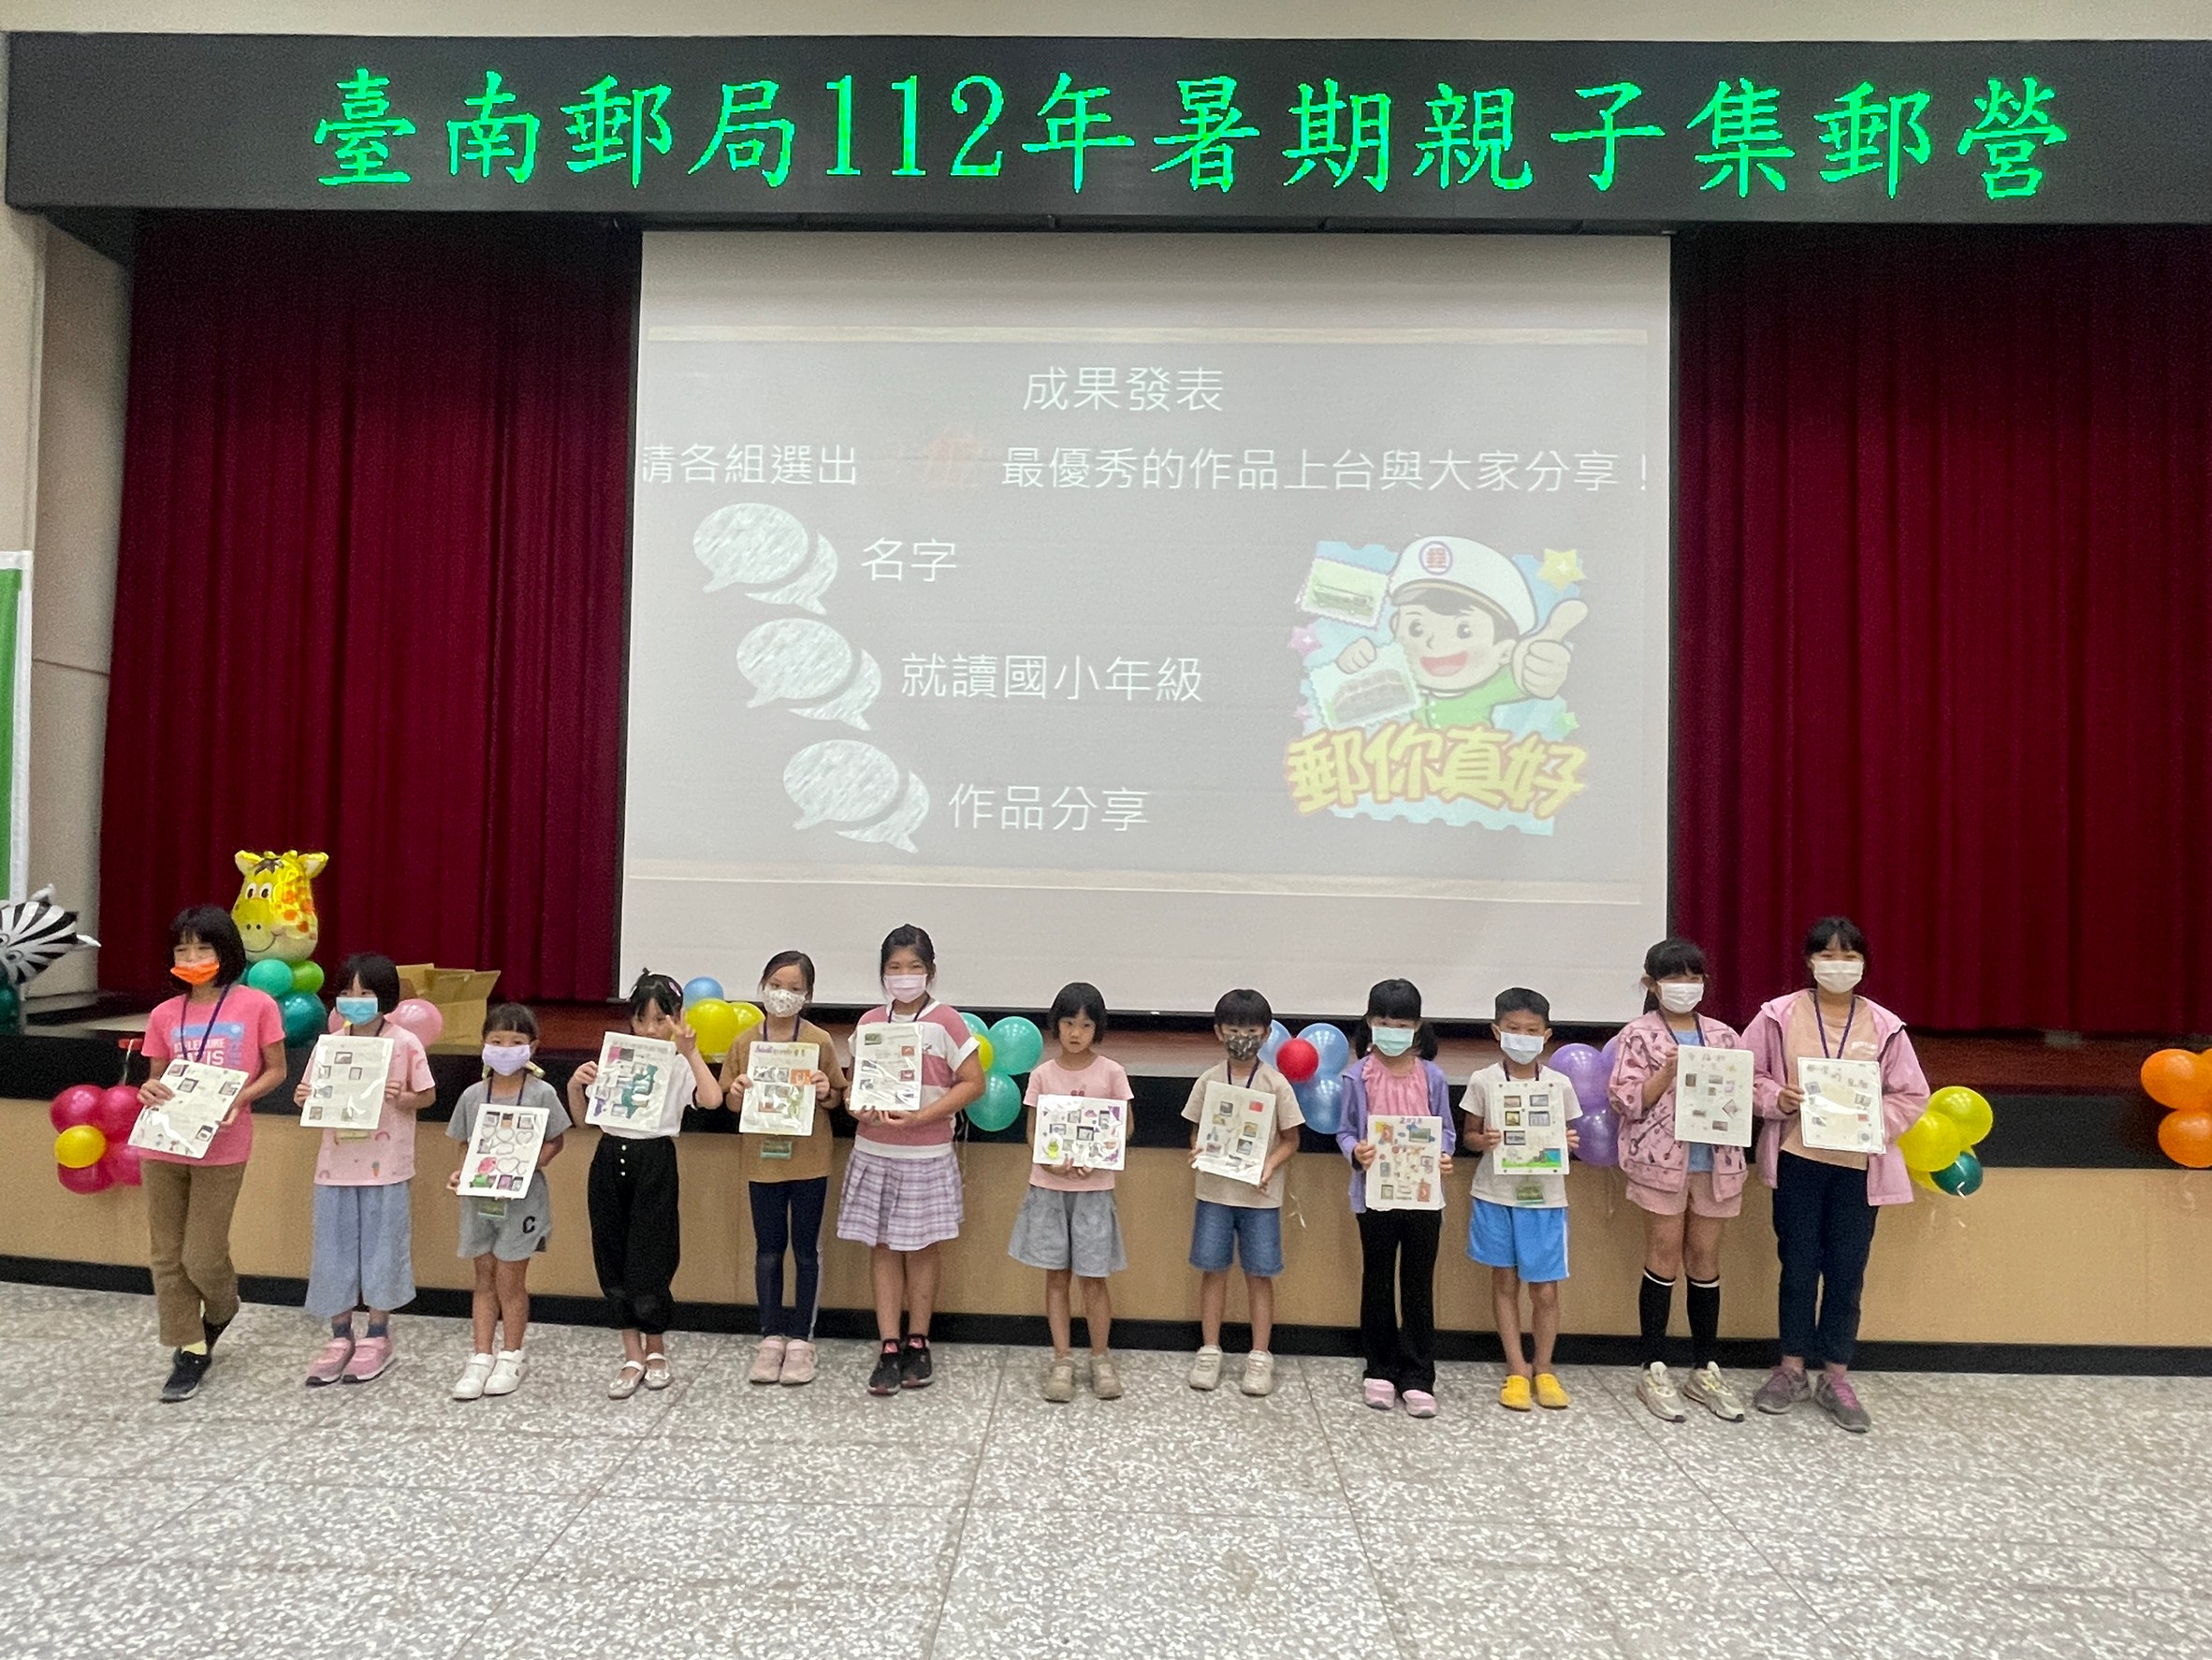 臺南郵局112年暑期親子集郵研習營活動